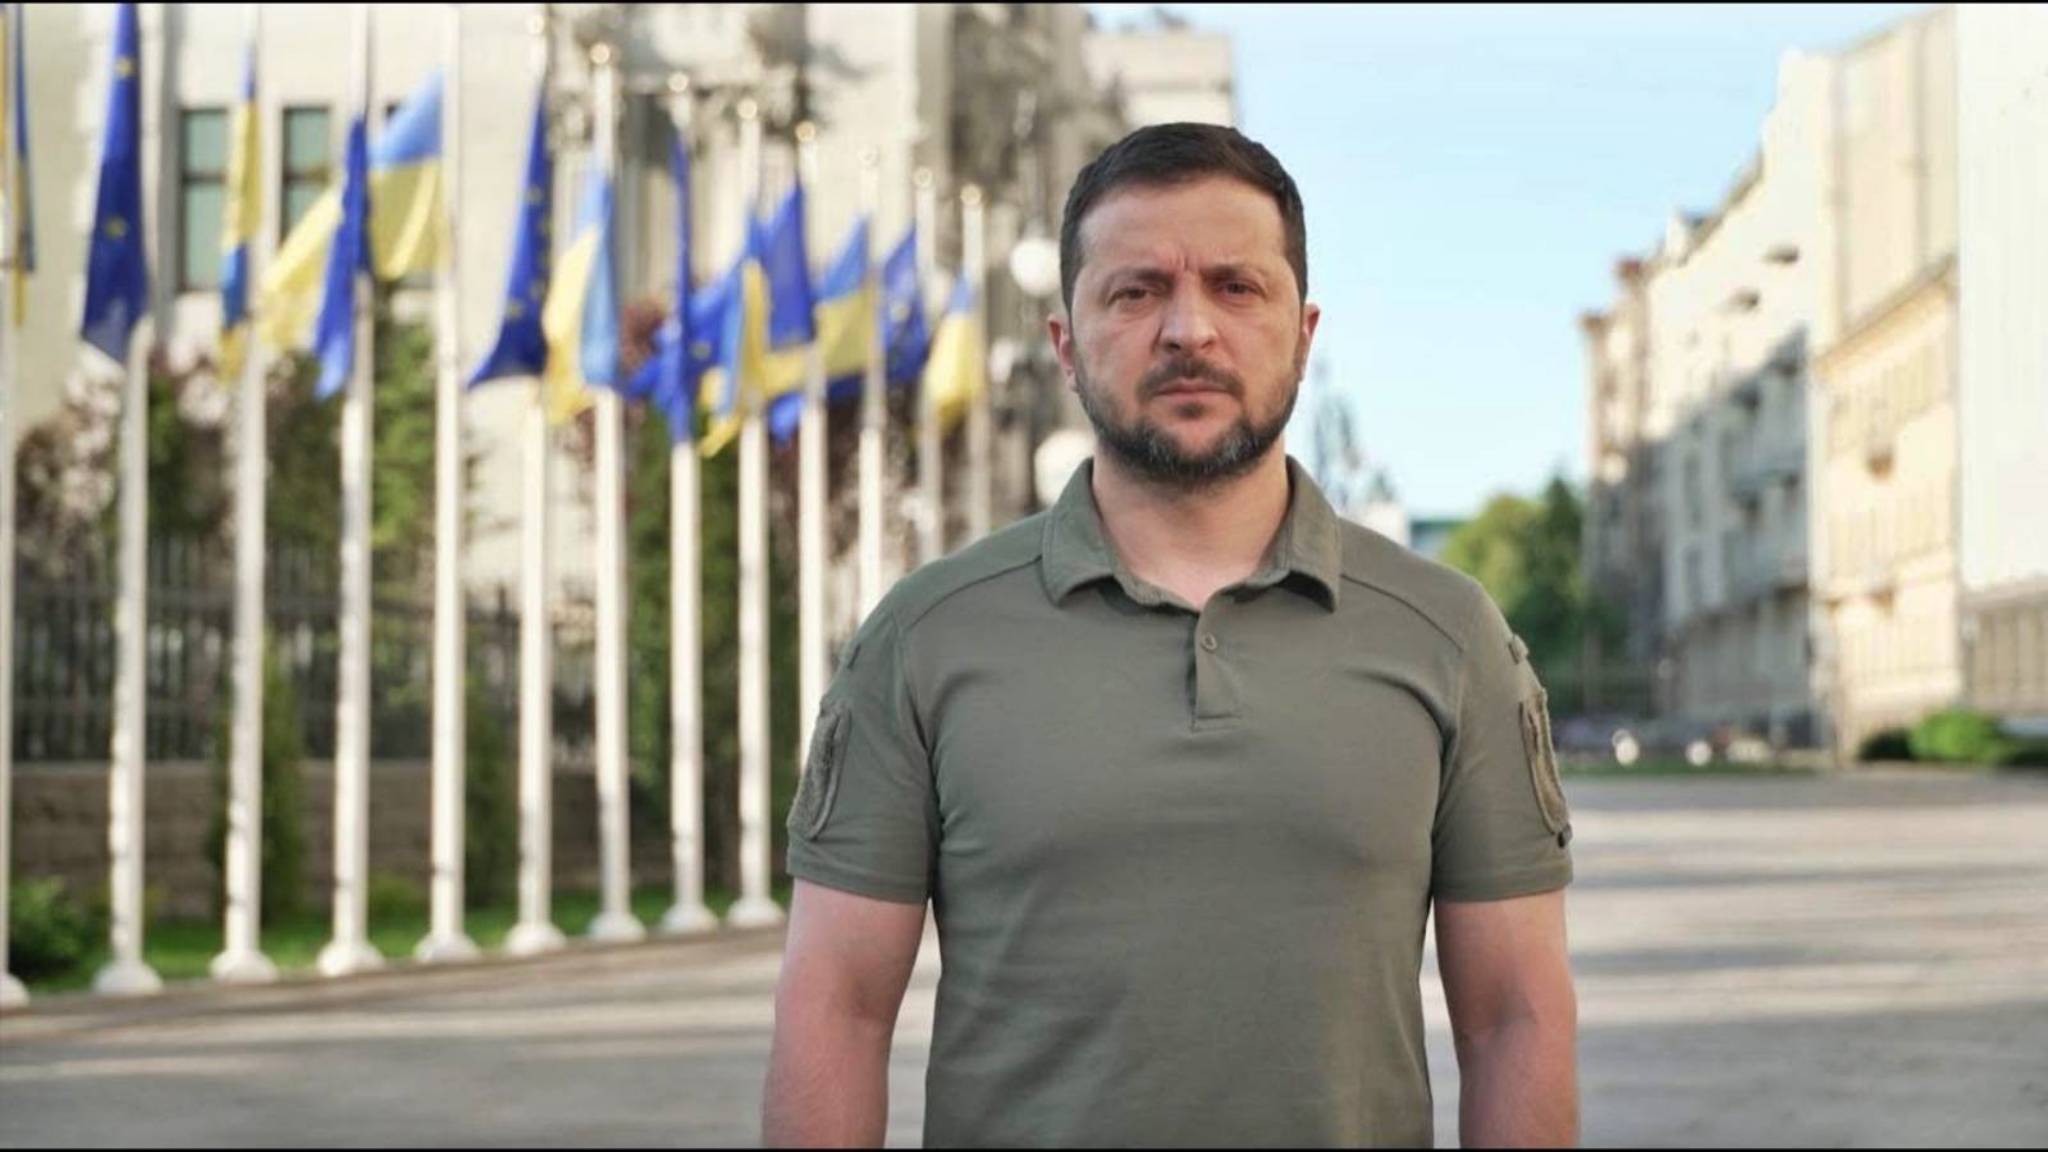 Volodimir Zelenski Marchează un Moment Istoric pentru Ucraina în Drumul său către Uniunea Europeană